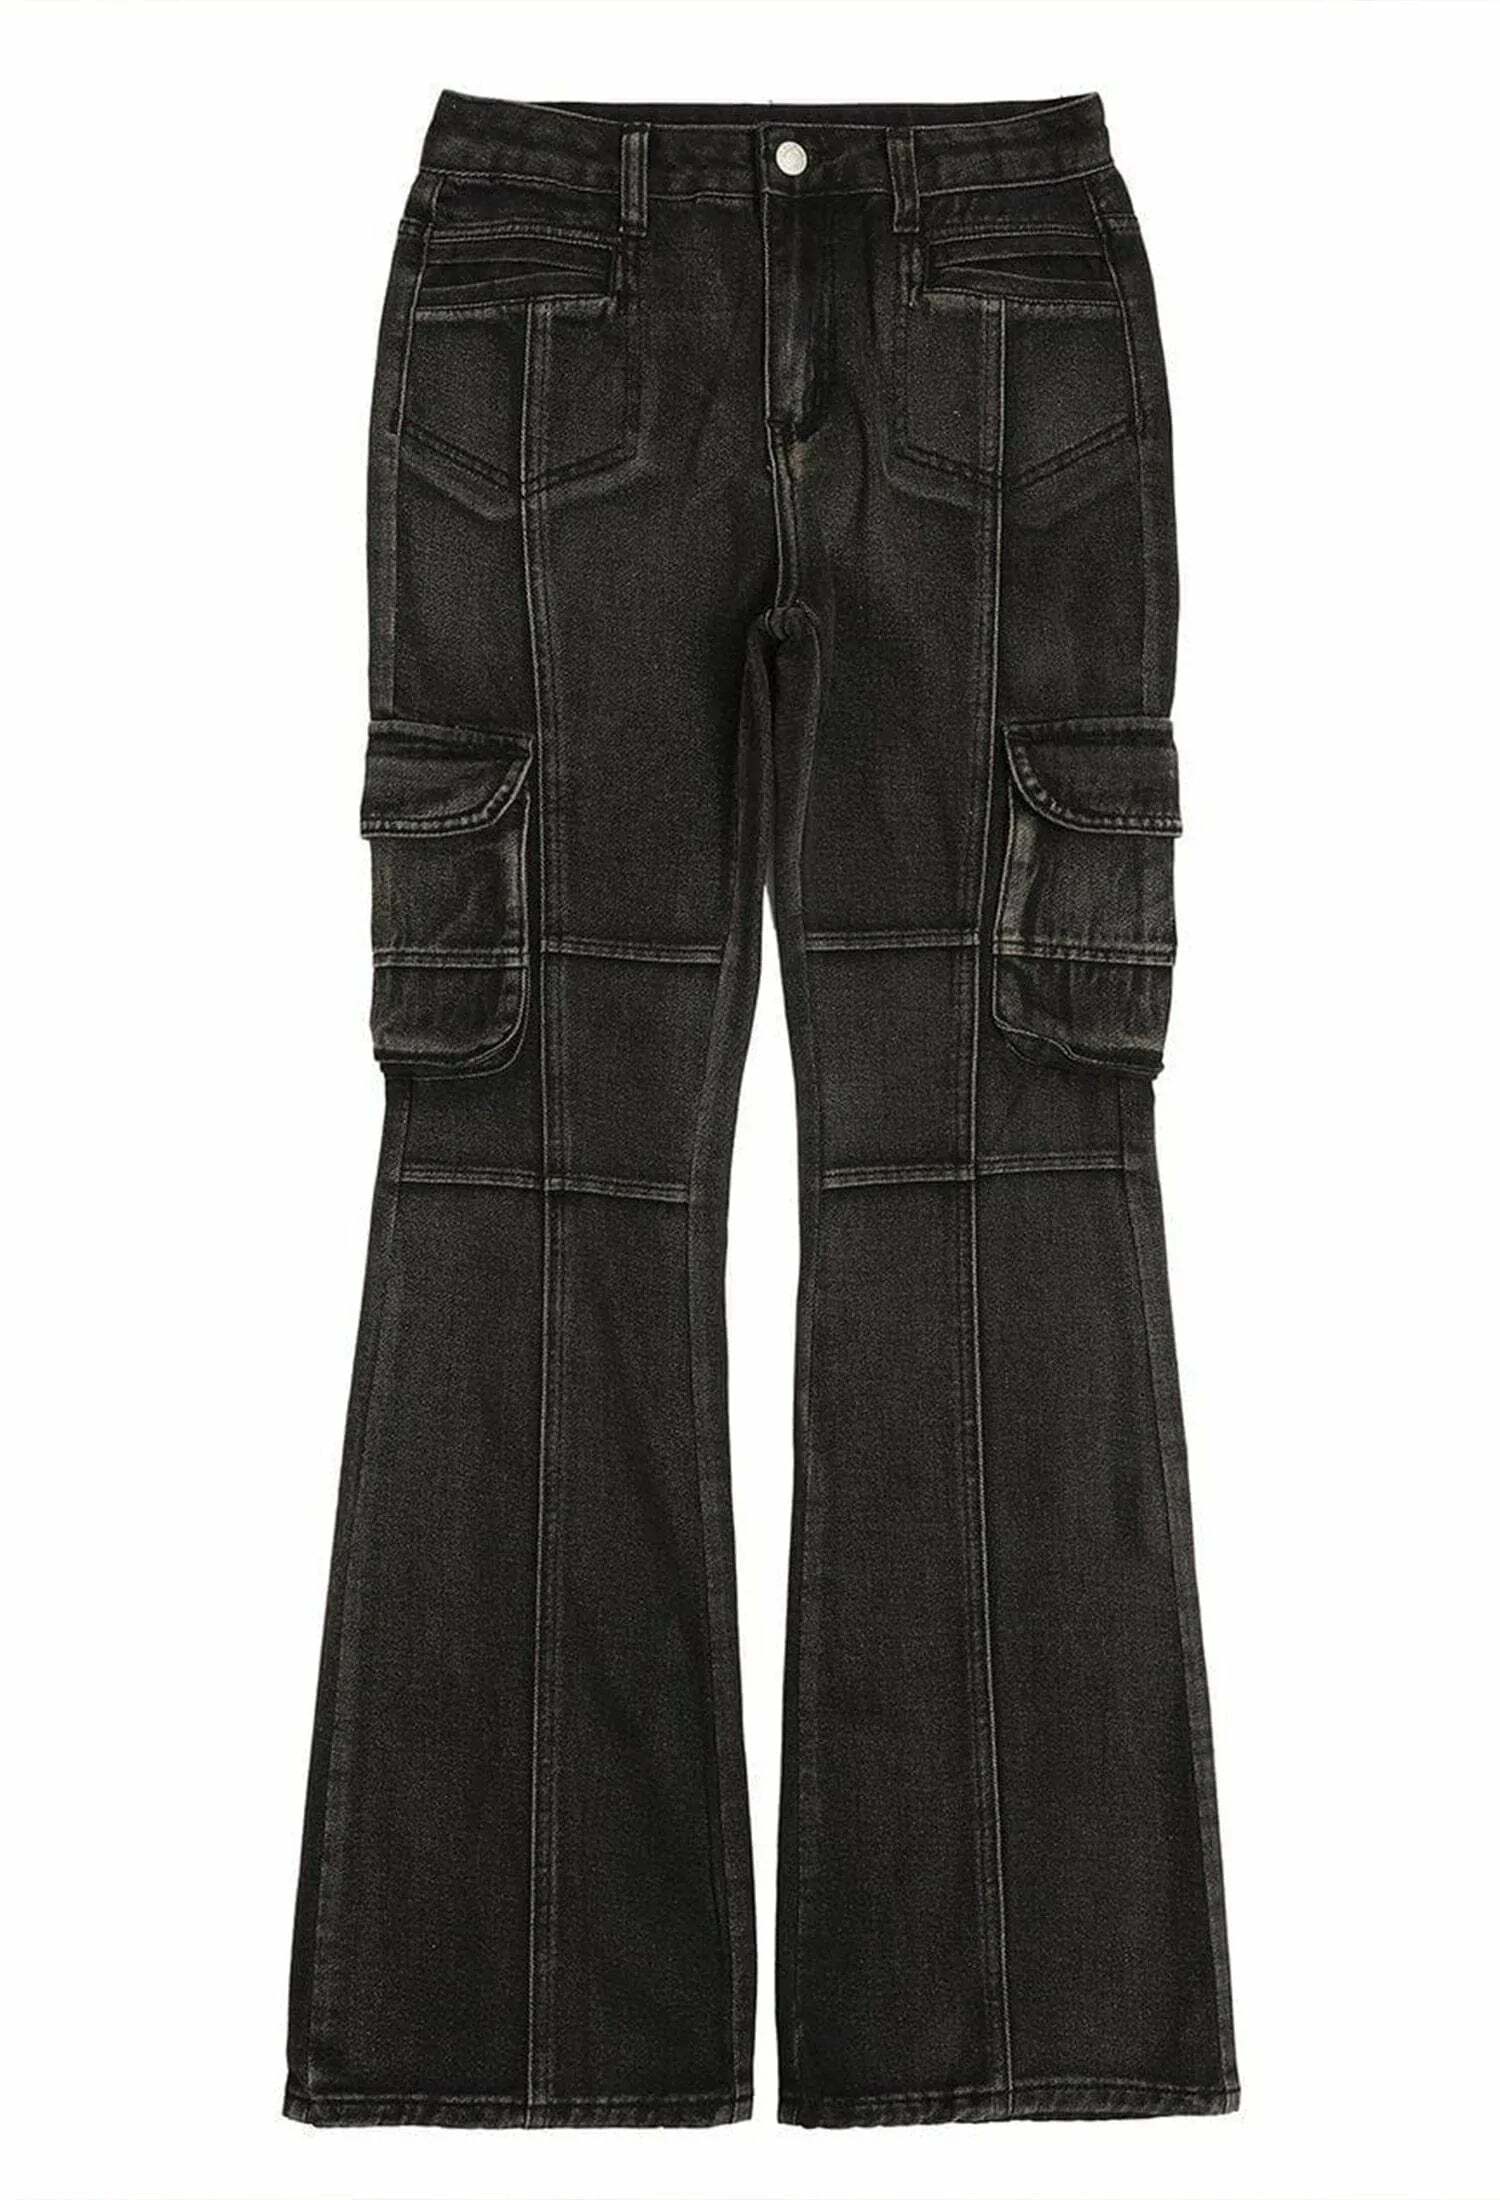 vintage wash slim fit jeans timeless streetwear essential 4266